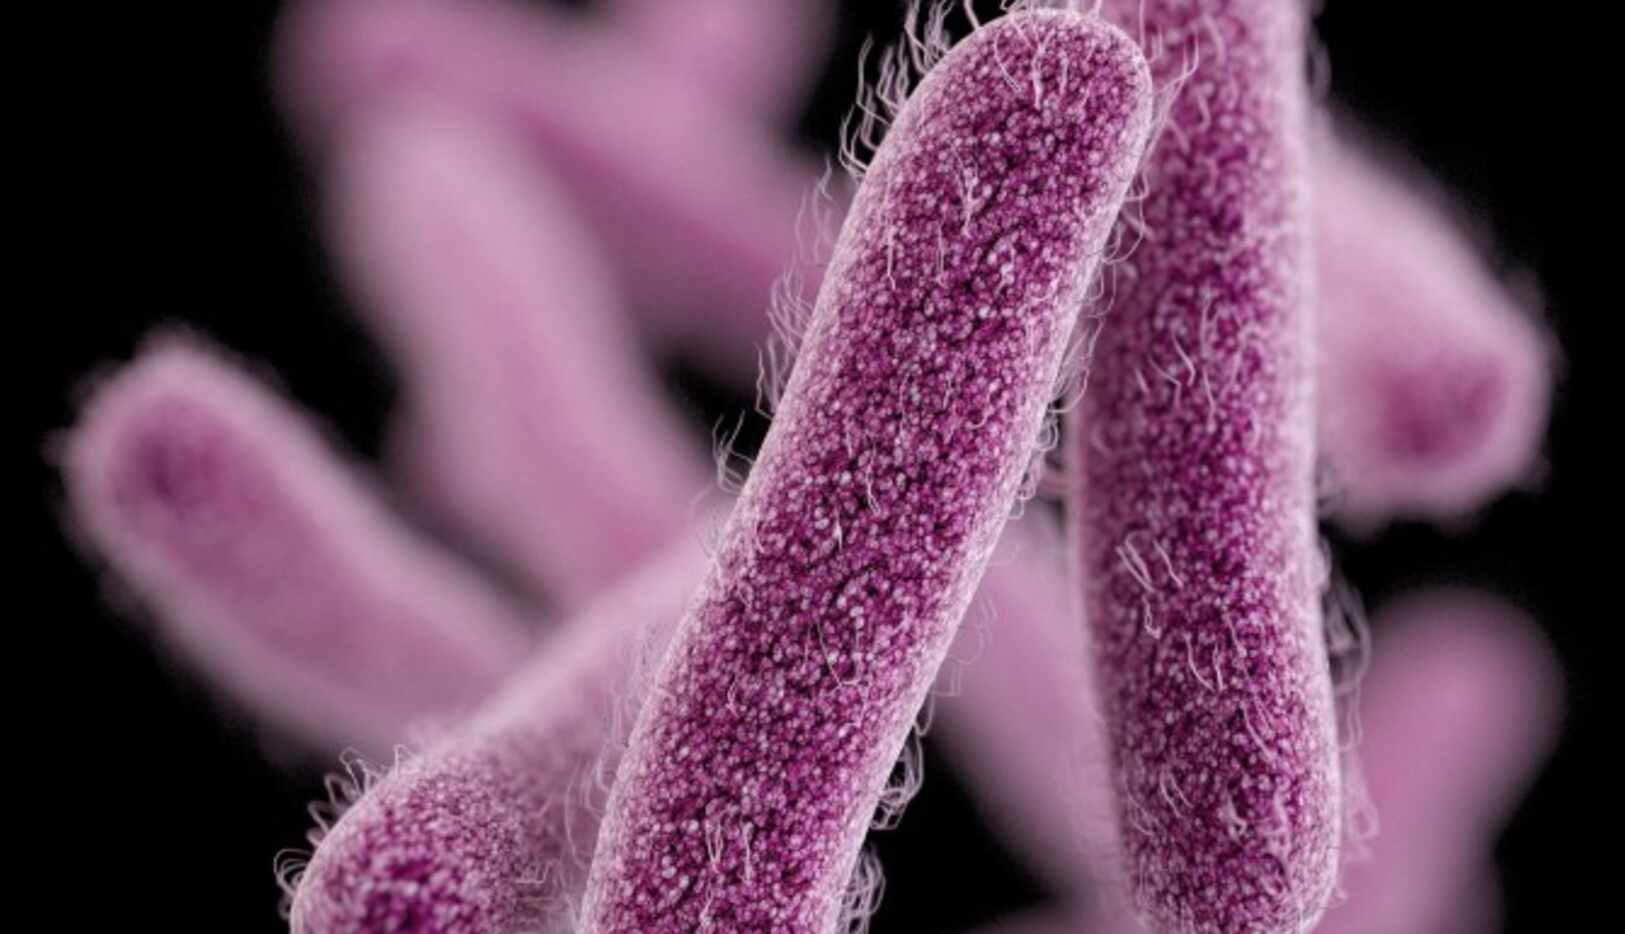 La bacteria shigella se ha propagado por Estados Unidos.(AP)
